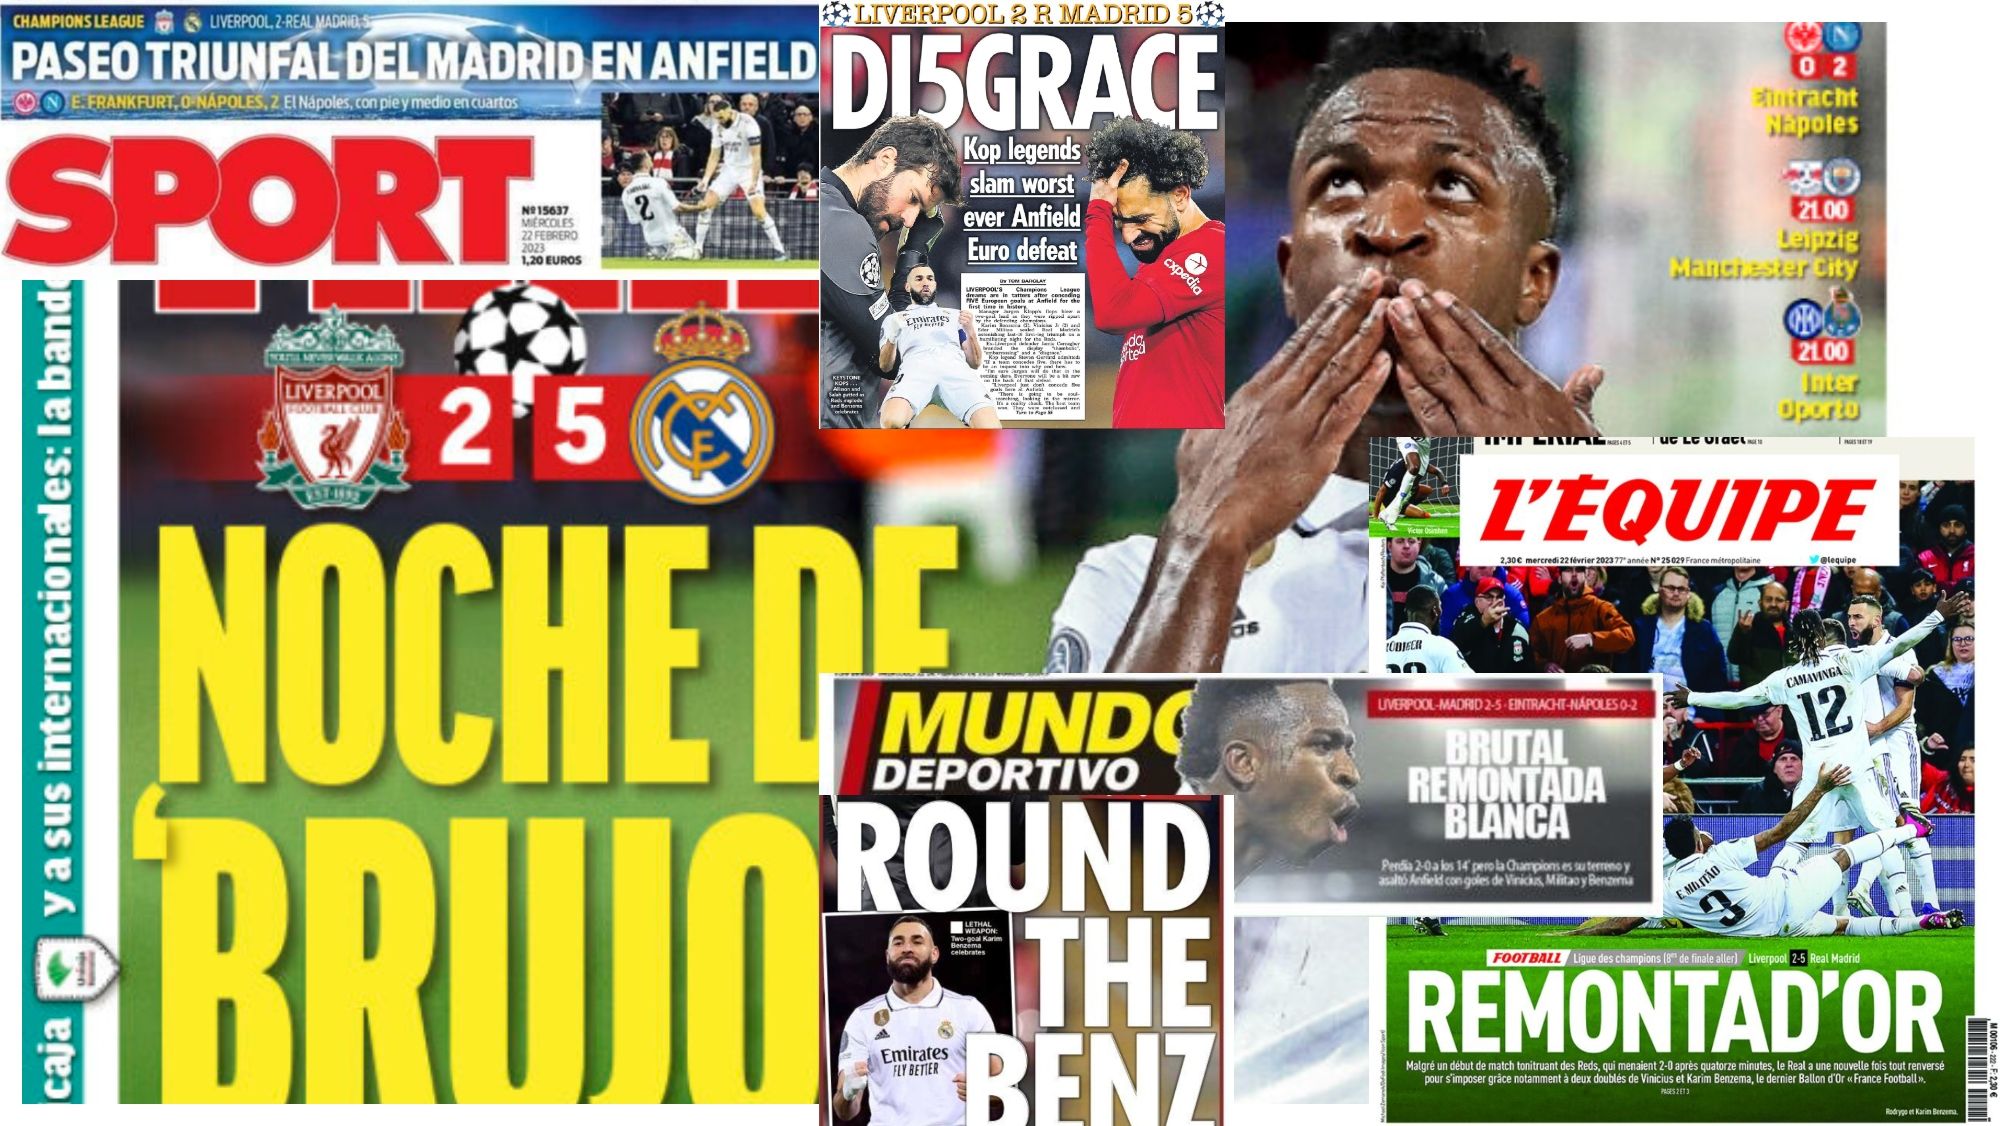 Las portadas de hoy, 22 de febrero, se rinden al Real Madrid